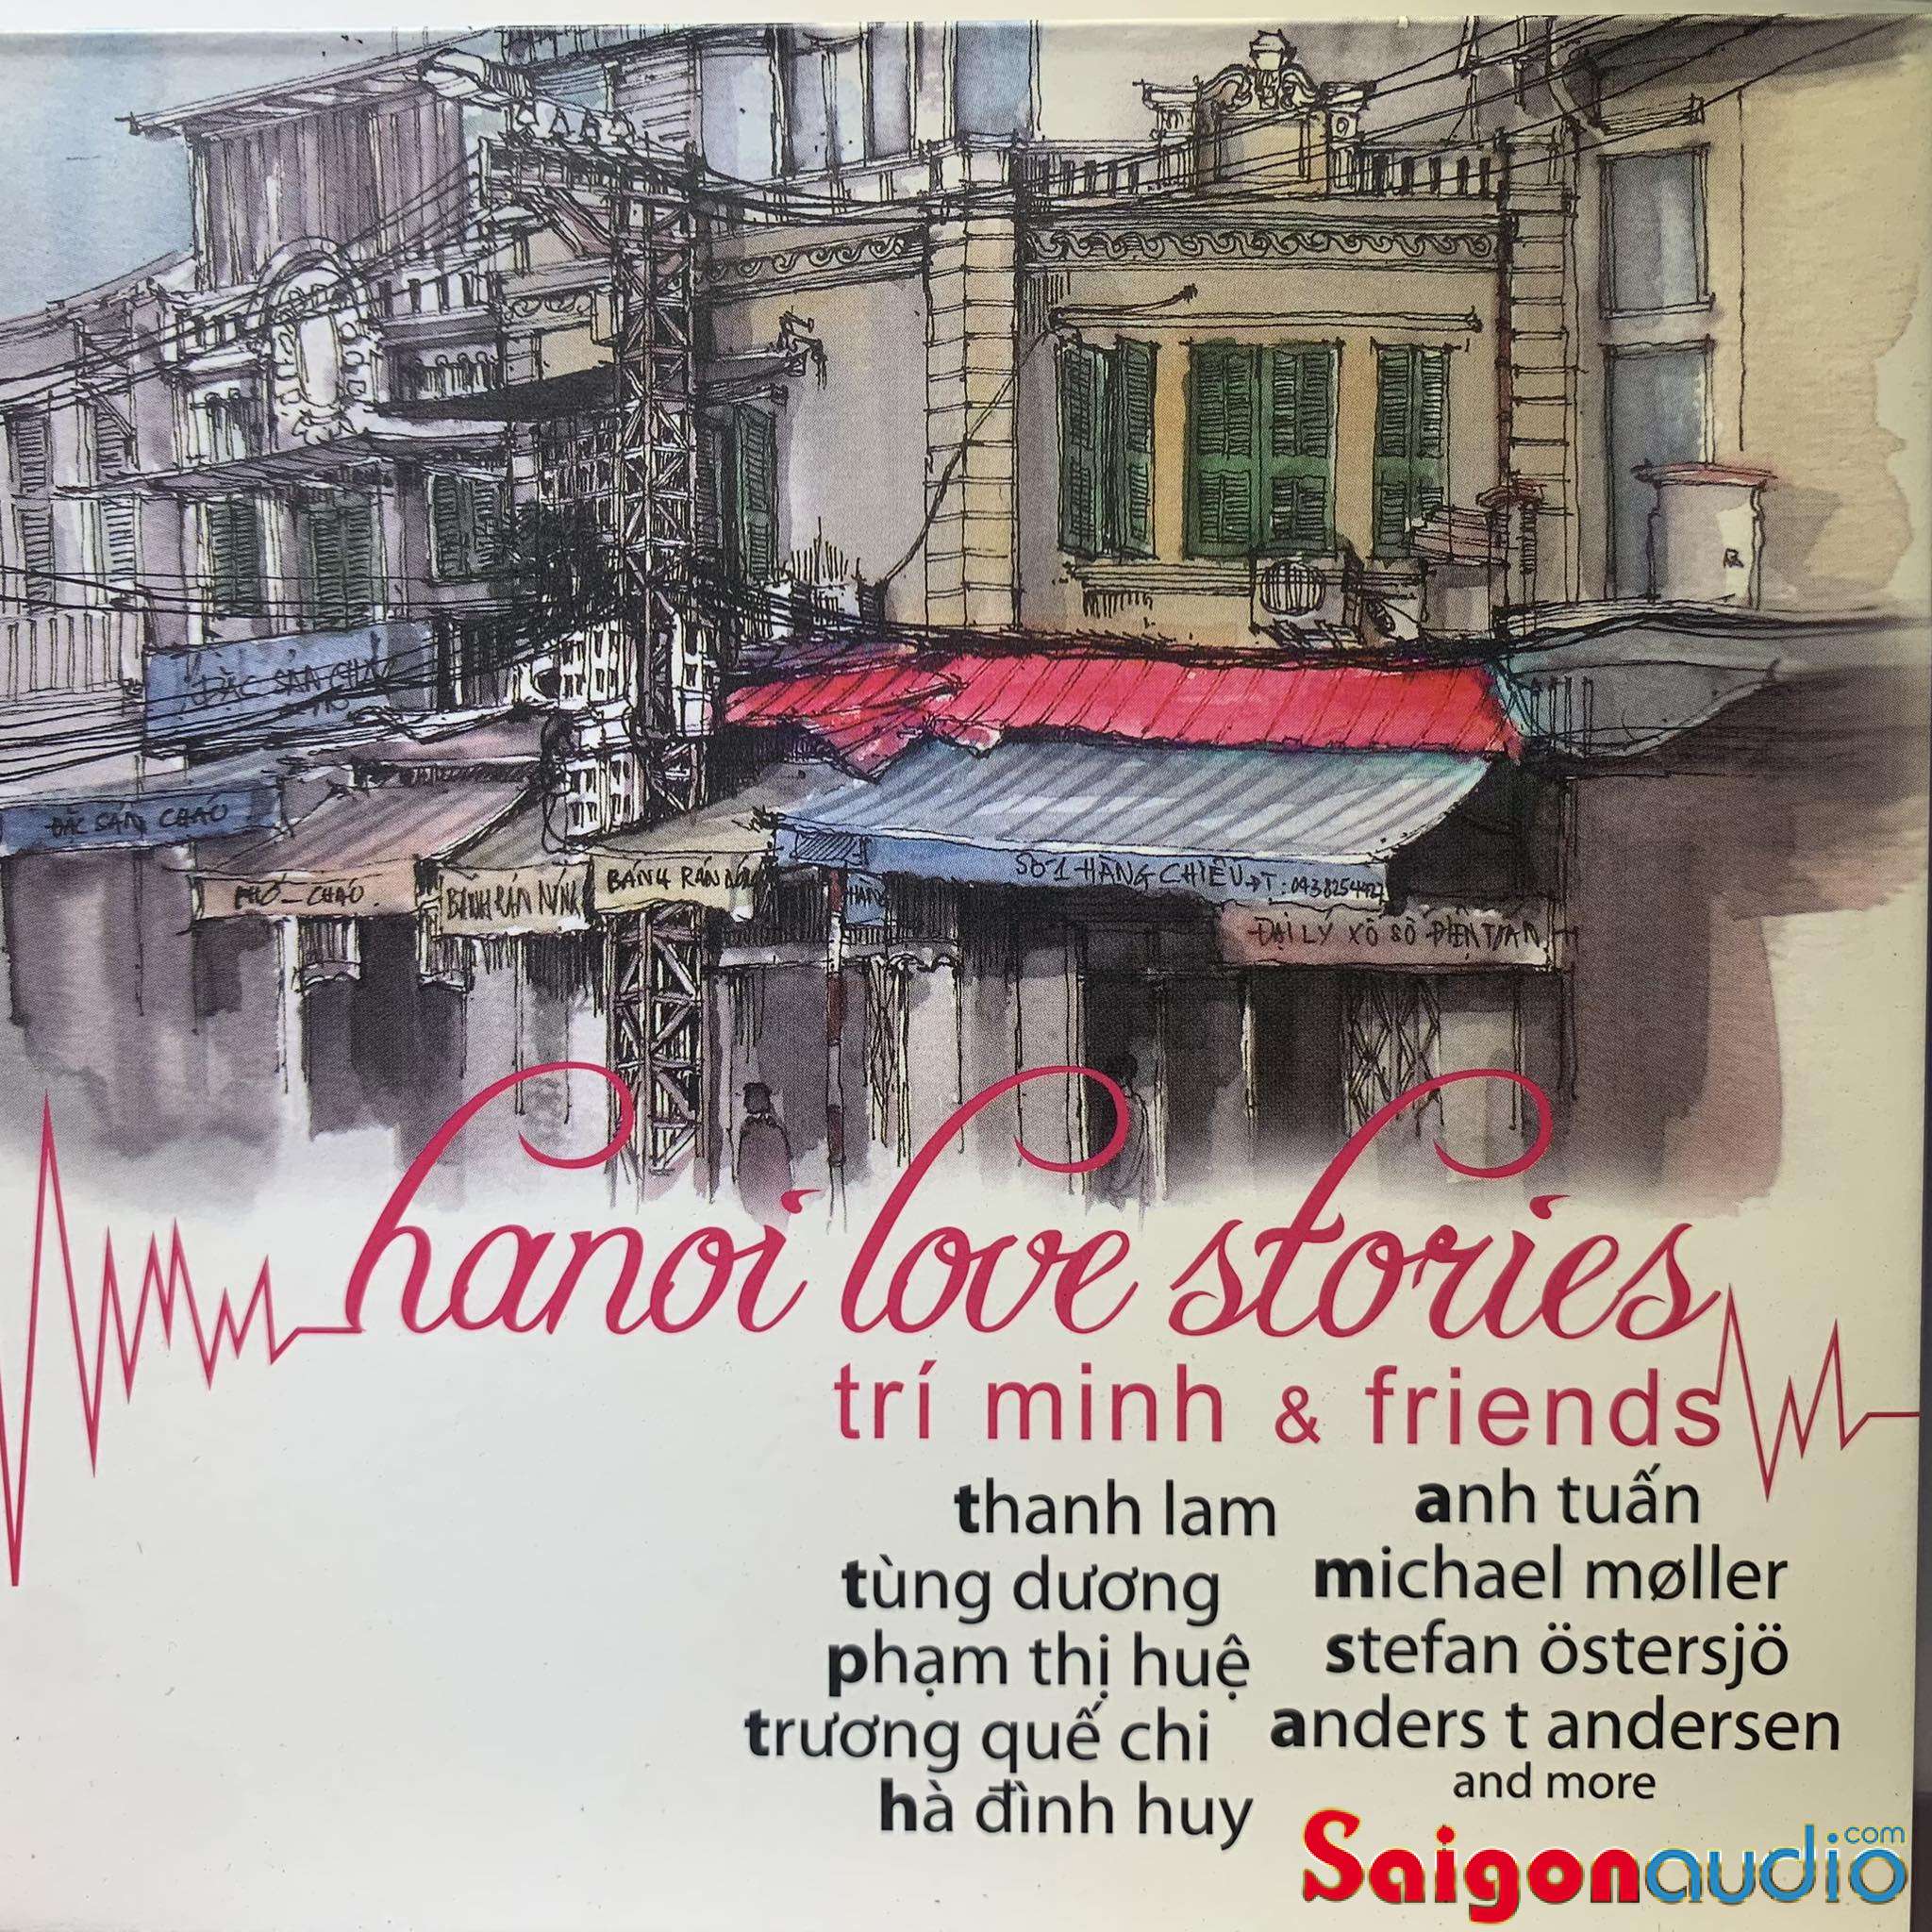 Đĩa CD gốc Trí Minh & Friends – Hanoi Love Stories (Free ship khi mua 2 đĩa CD cùng hoặc khác loại)